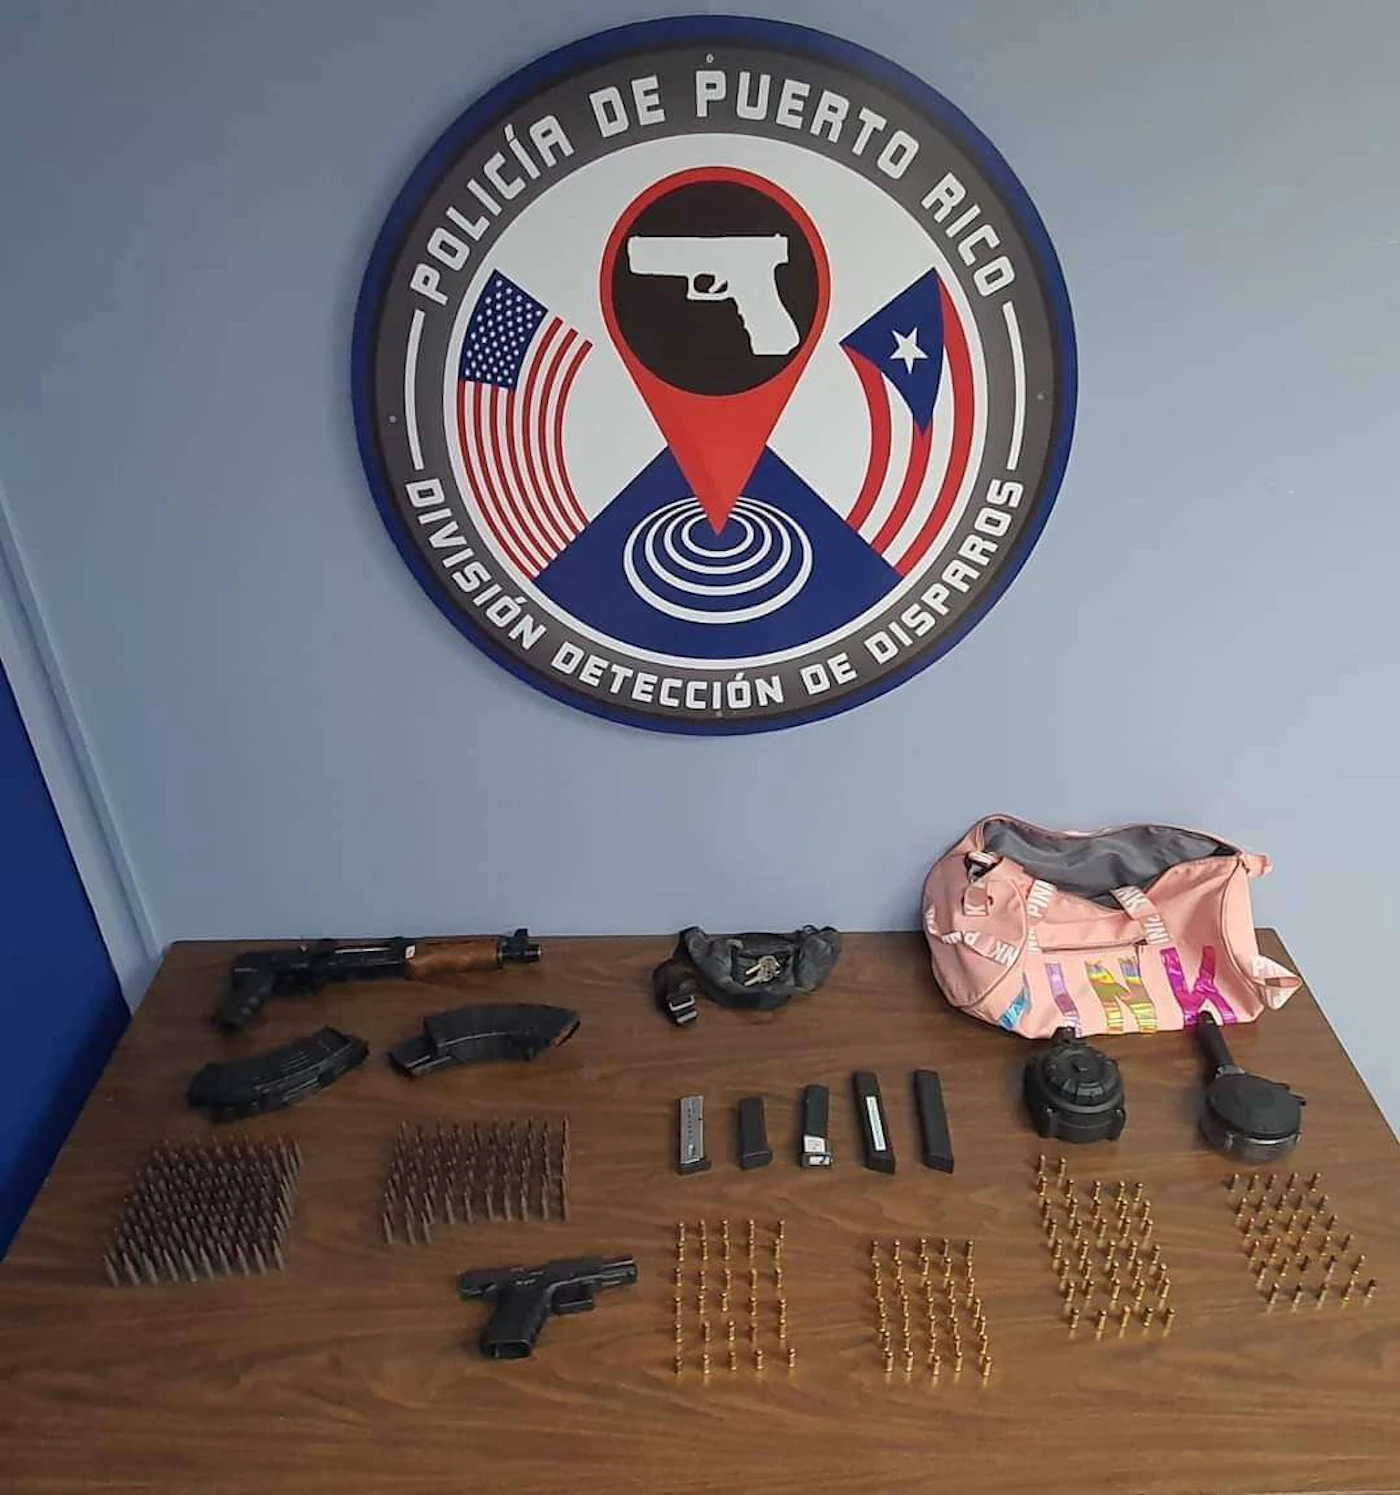 Puerto Rico - Florida - Gun control